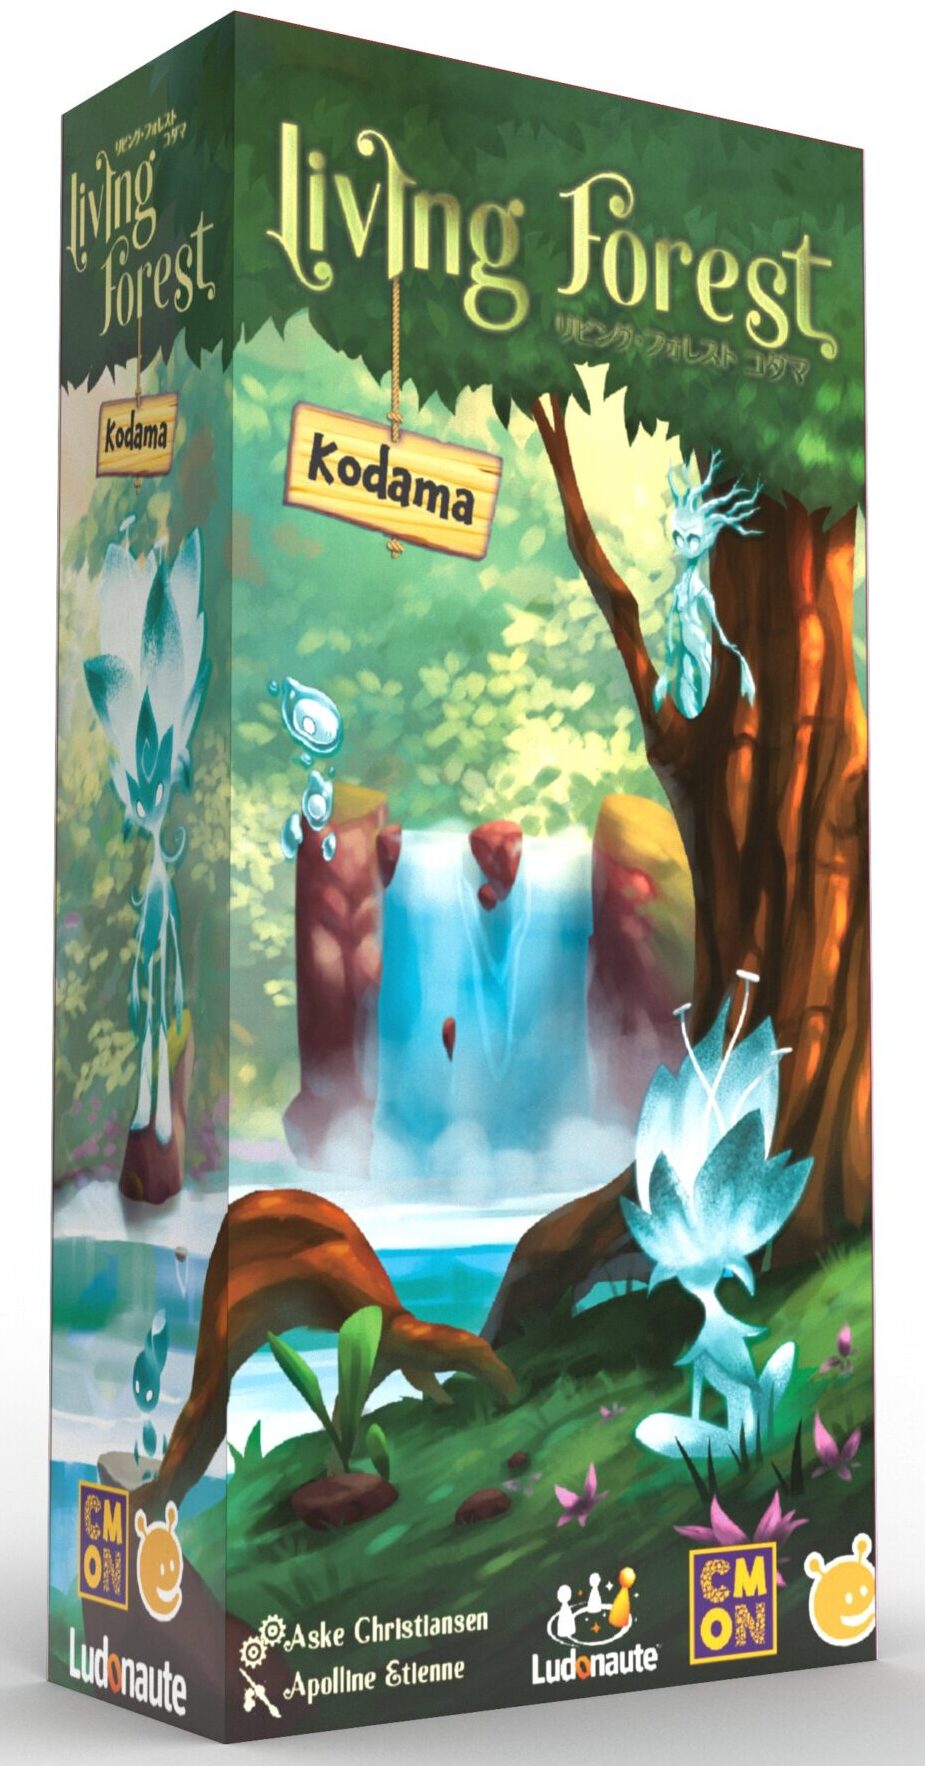 livingforest-kodamaJ